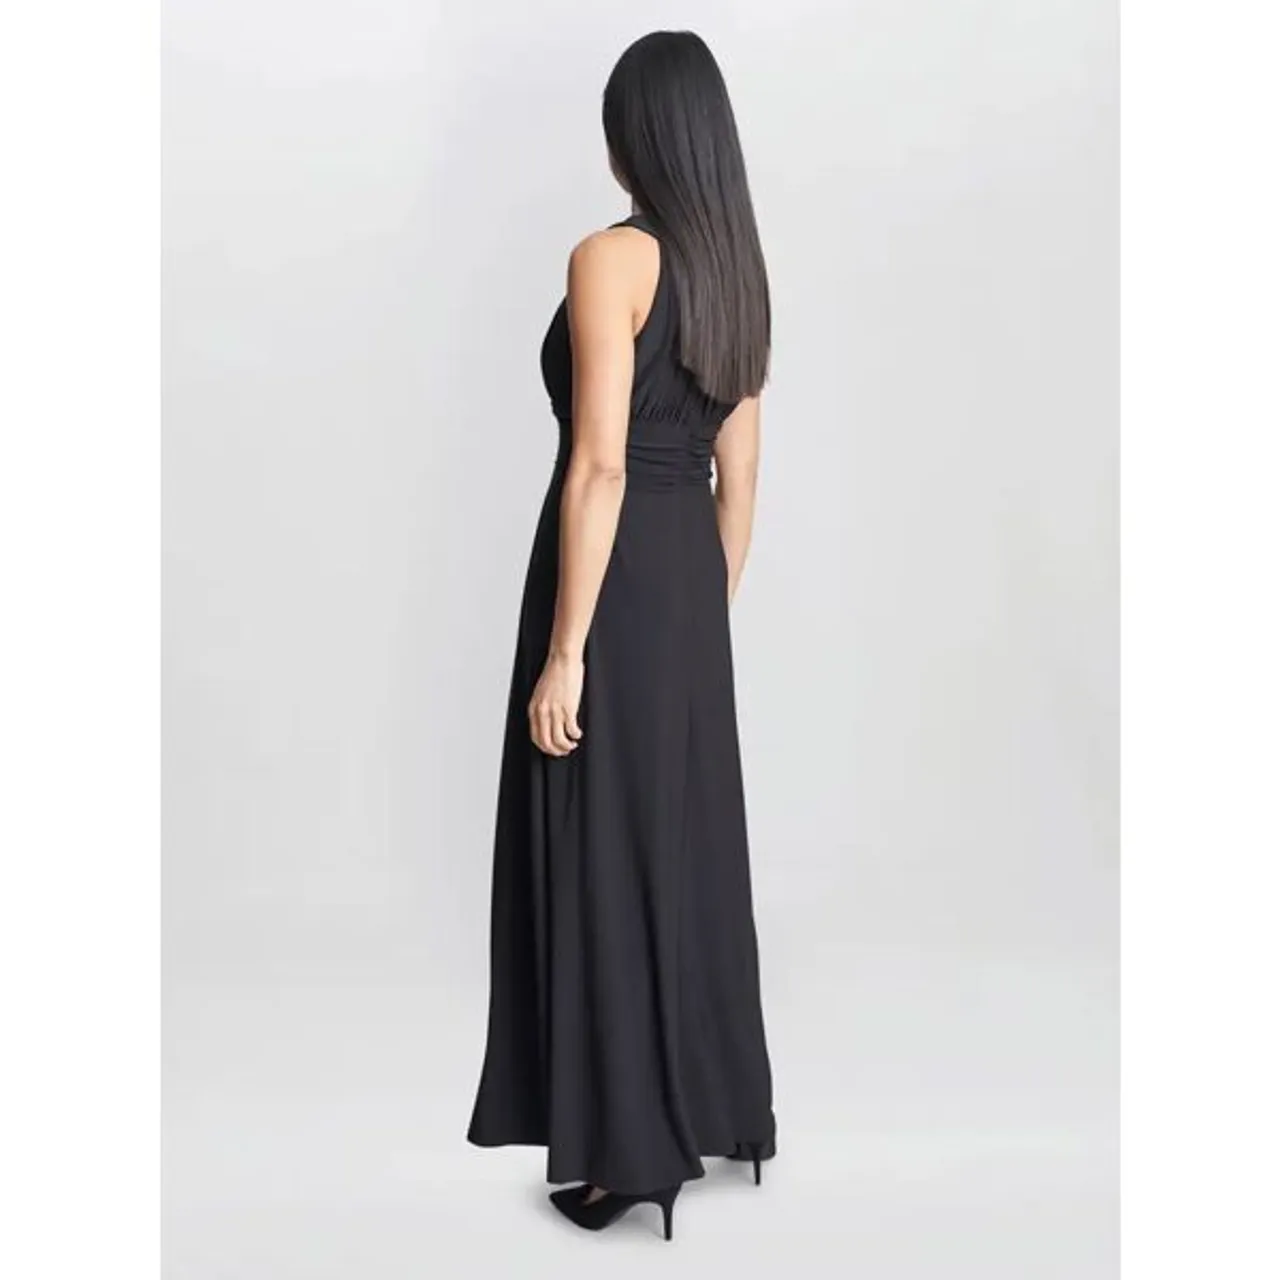 Gina Bacconi Kelsie Ruched Maxi Dress, Black - Black - Female